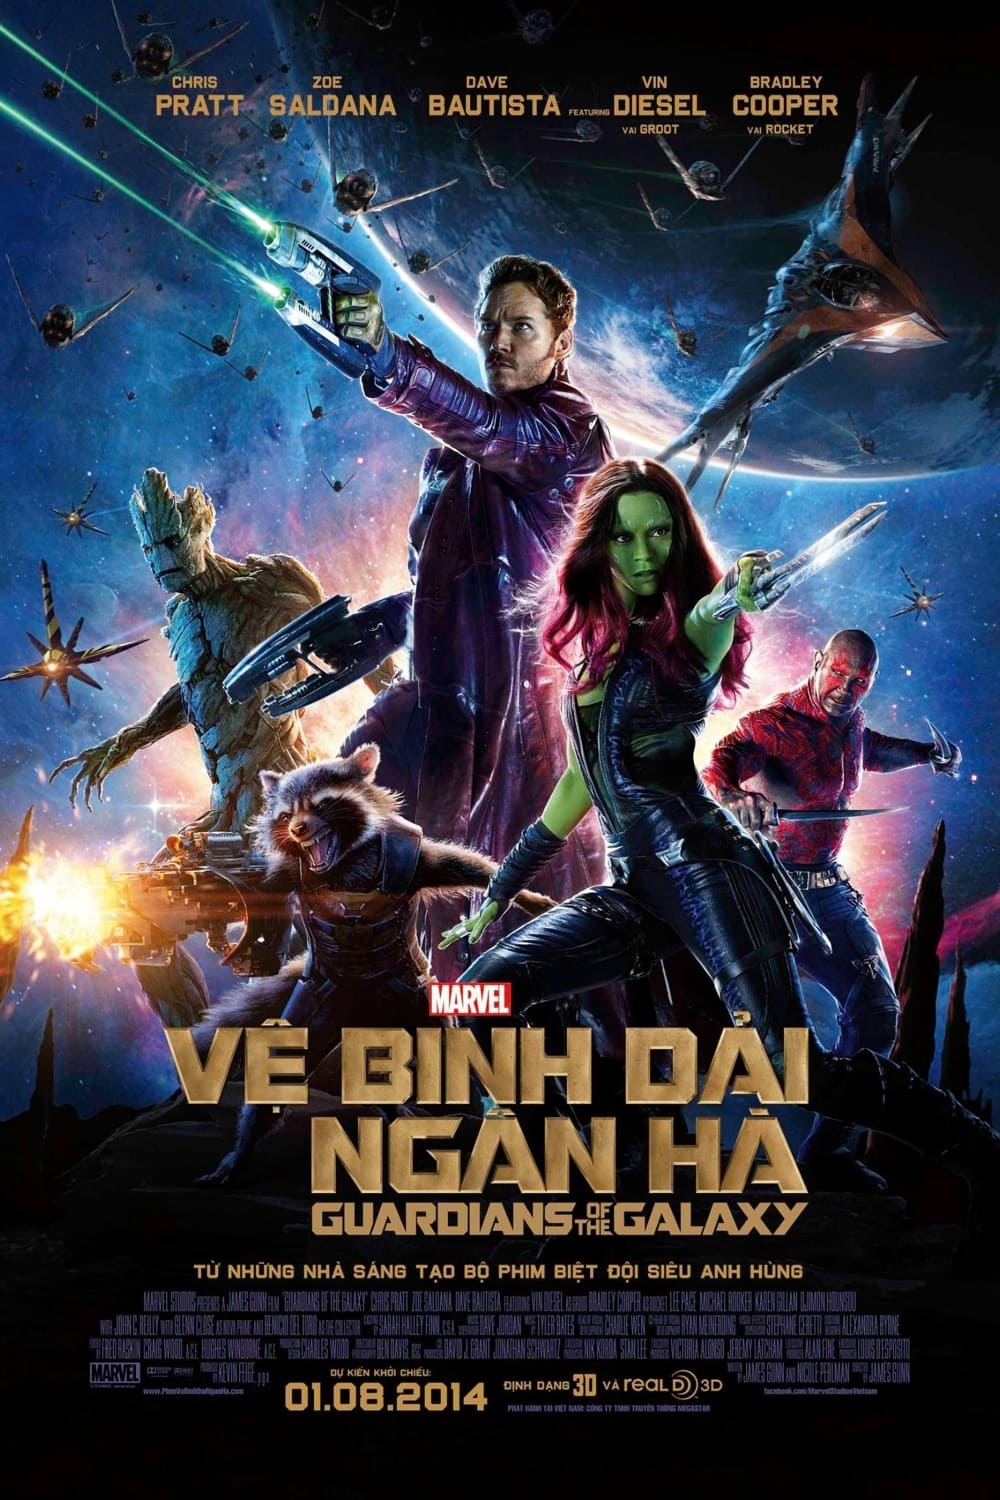 Xem Phim Vệ Binh Dải Ngân Hà (Guardians of the Galaxy)